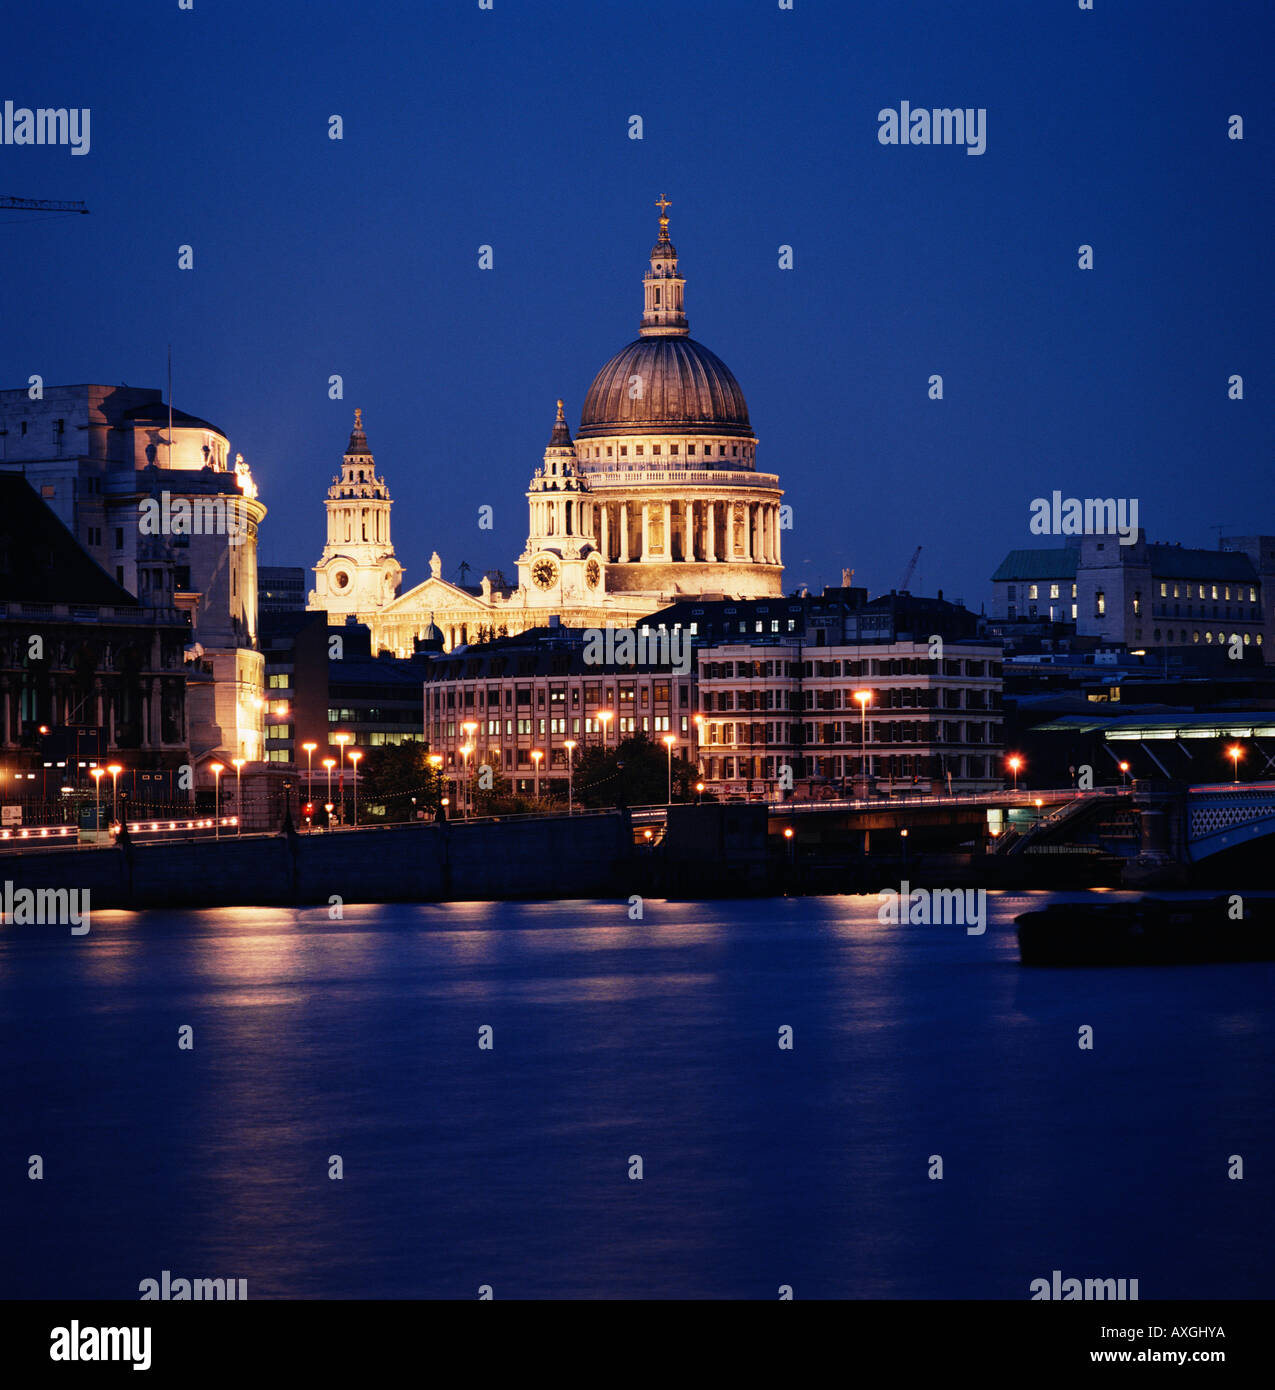 La Cathédrale de St Paul, illuminée la nuit Londres Angleterre Royaume-Uni Royaume-Uni Grande-bretagne GO Banque D'Images